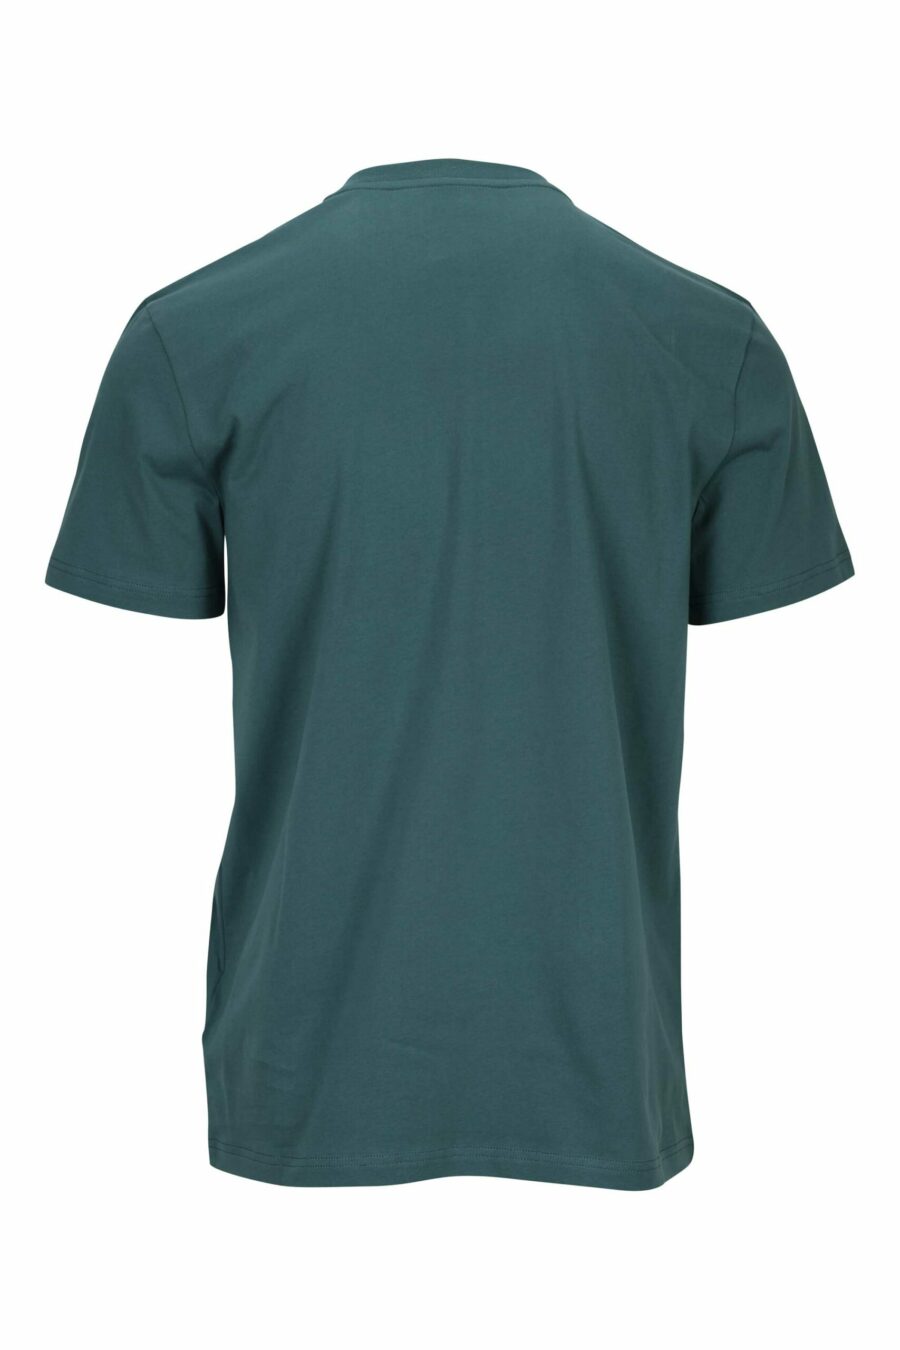 T-shirt verde em algodão orgânico com maxilogue preto clássico - 667113391533 1 scaled